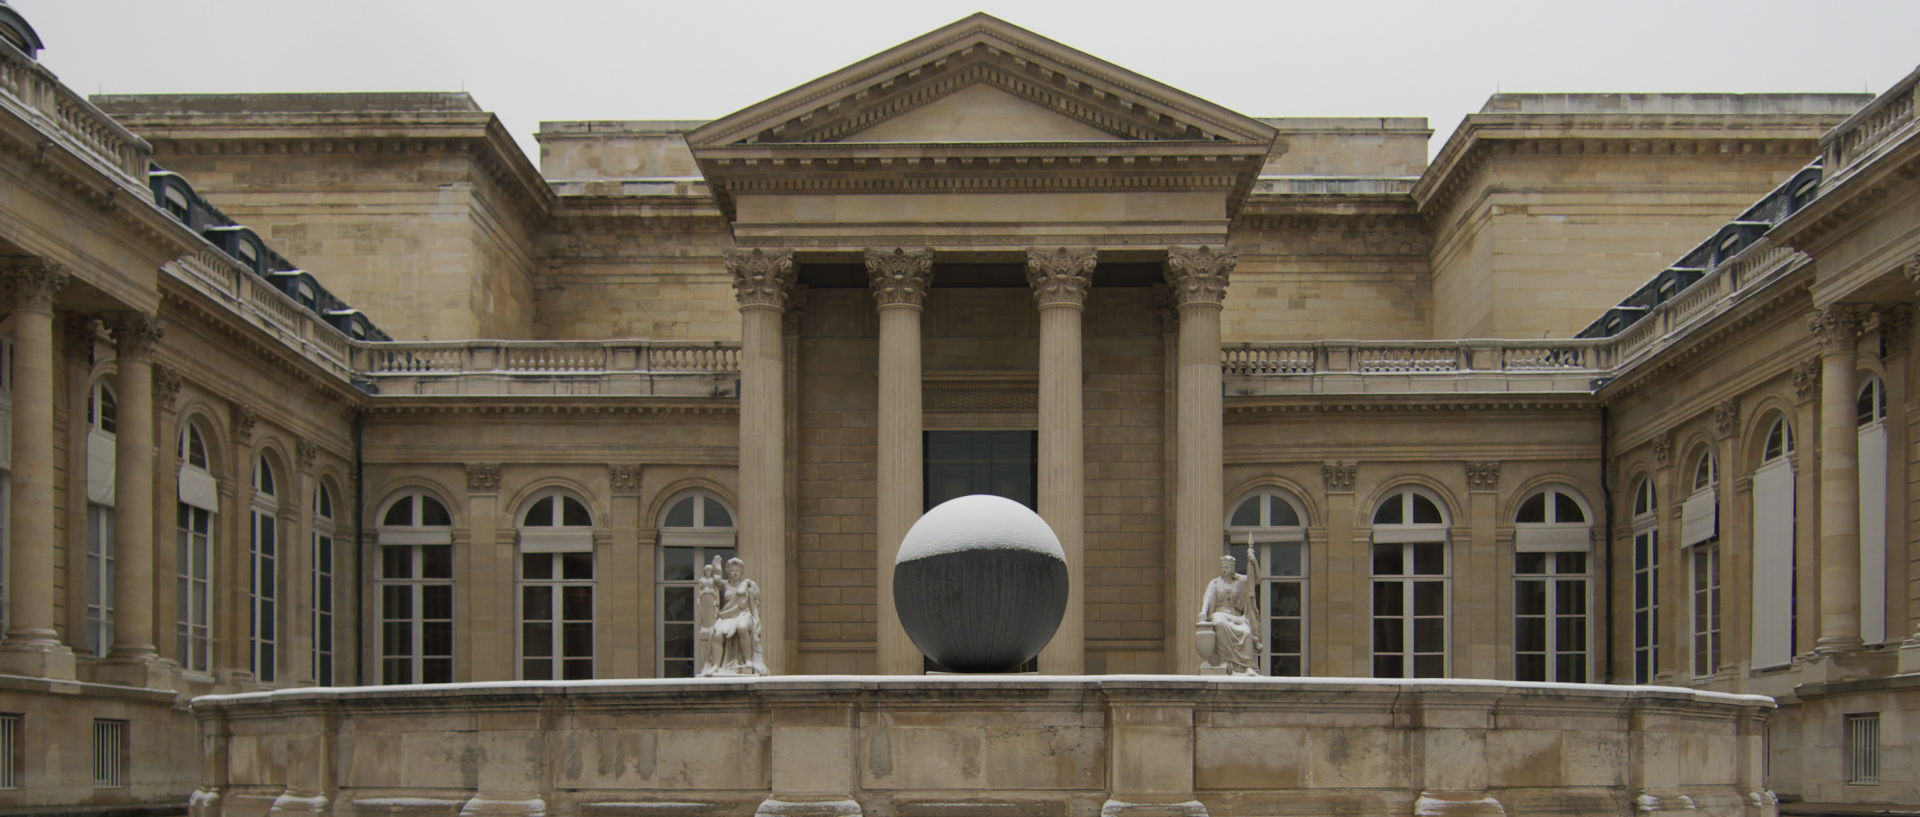 Photo de l'Assemblée nationale sous la neige, Paris.